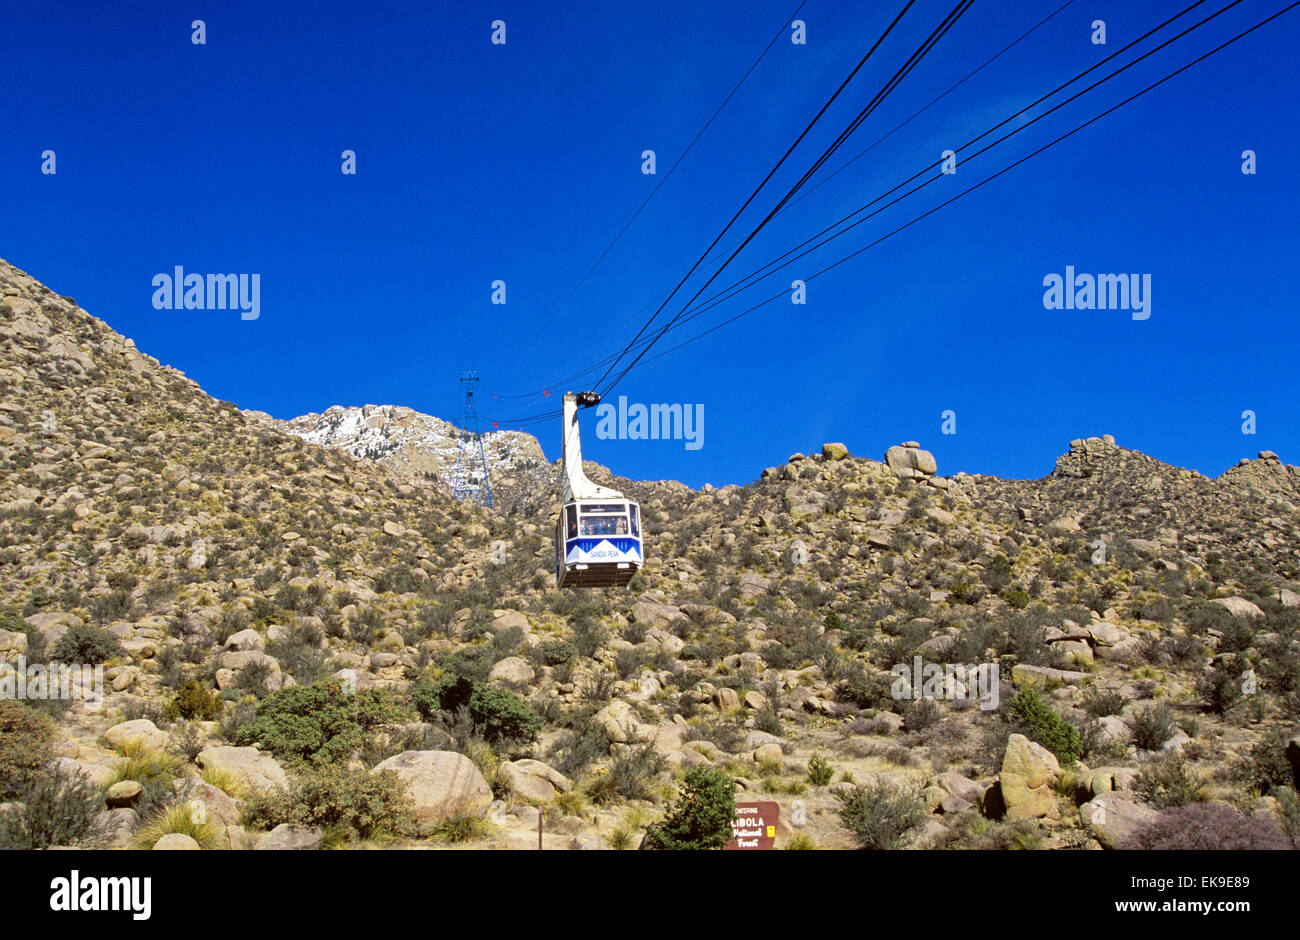 Sandia Peak Aerial Tramway, (2,7 Meilen) ist der weltweit größte einzelne Span Straßenbahn, Albuquerque, New Mexico, USA. Stockfoto